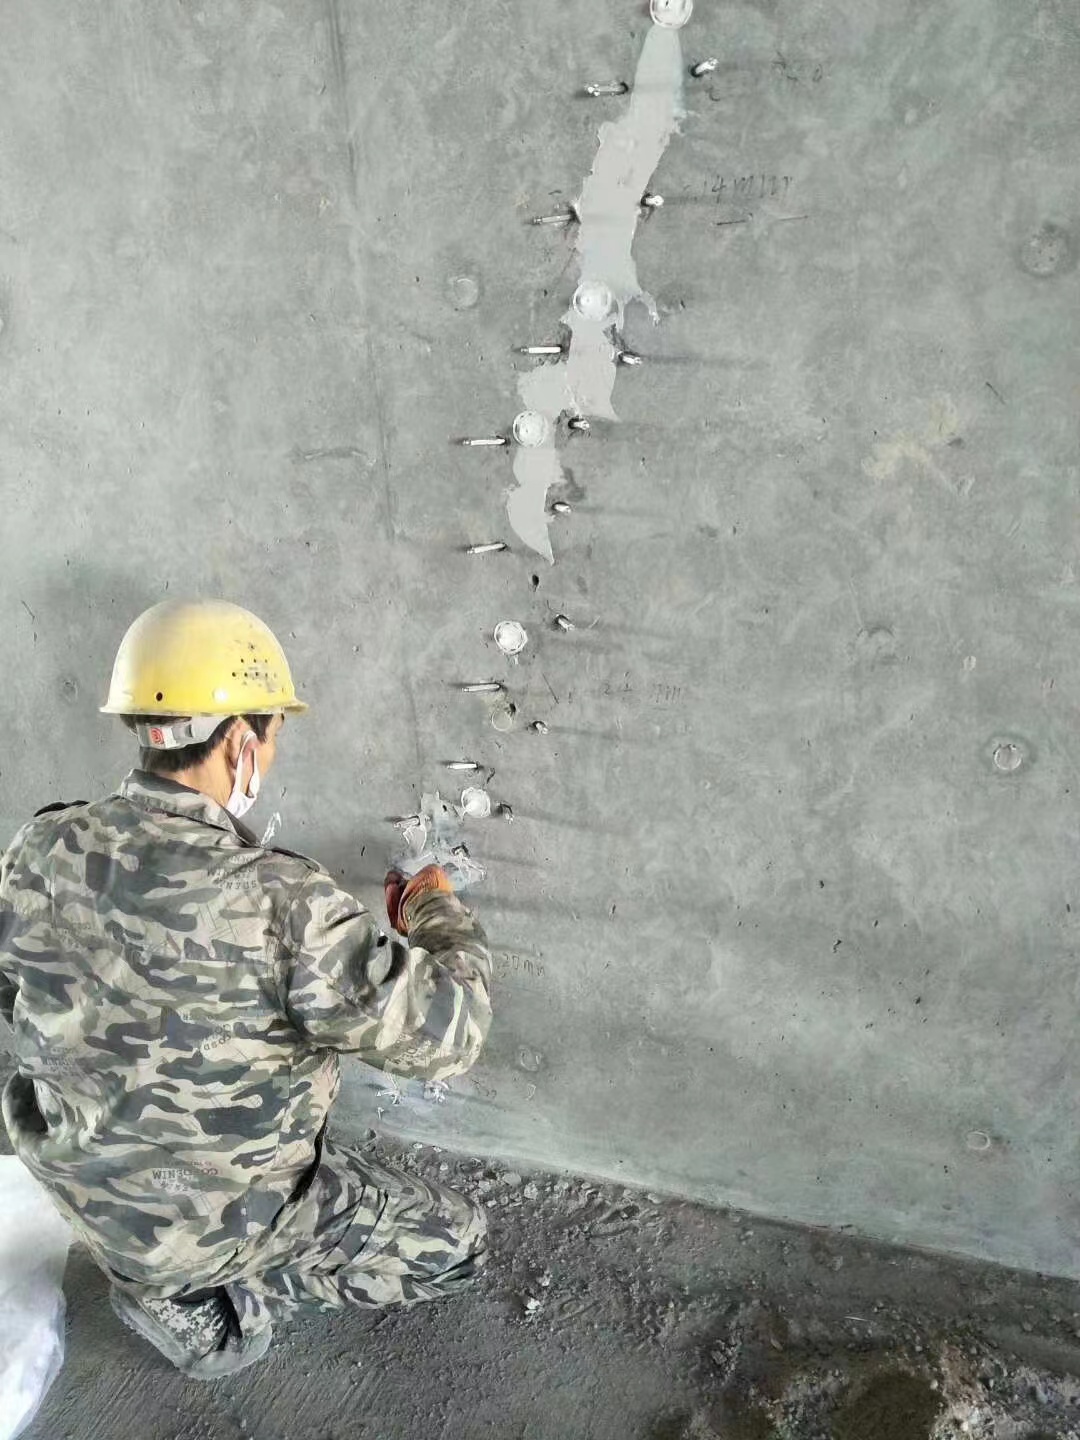 乌海混凝土楼板裂缝加固施工的方案